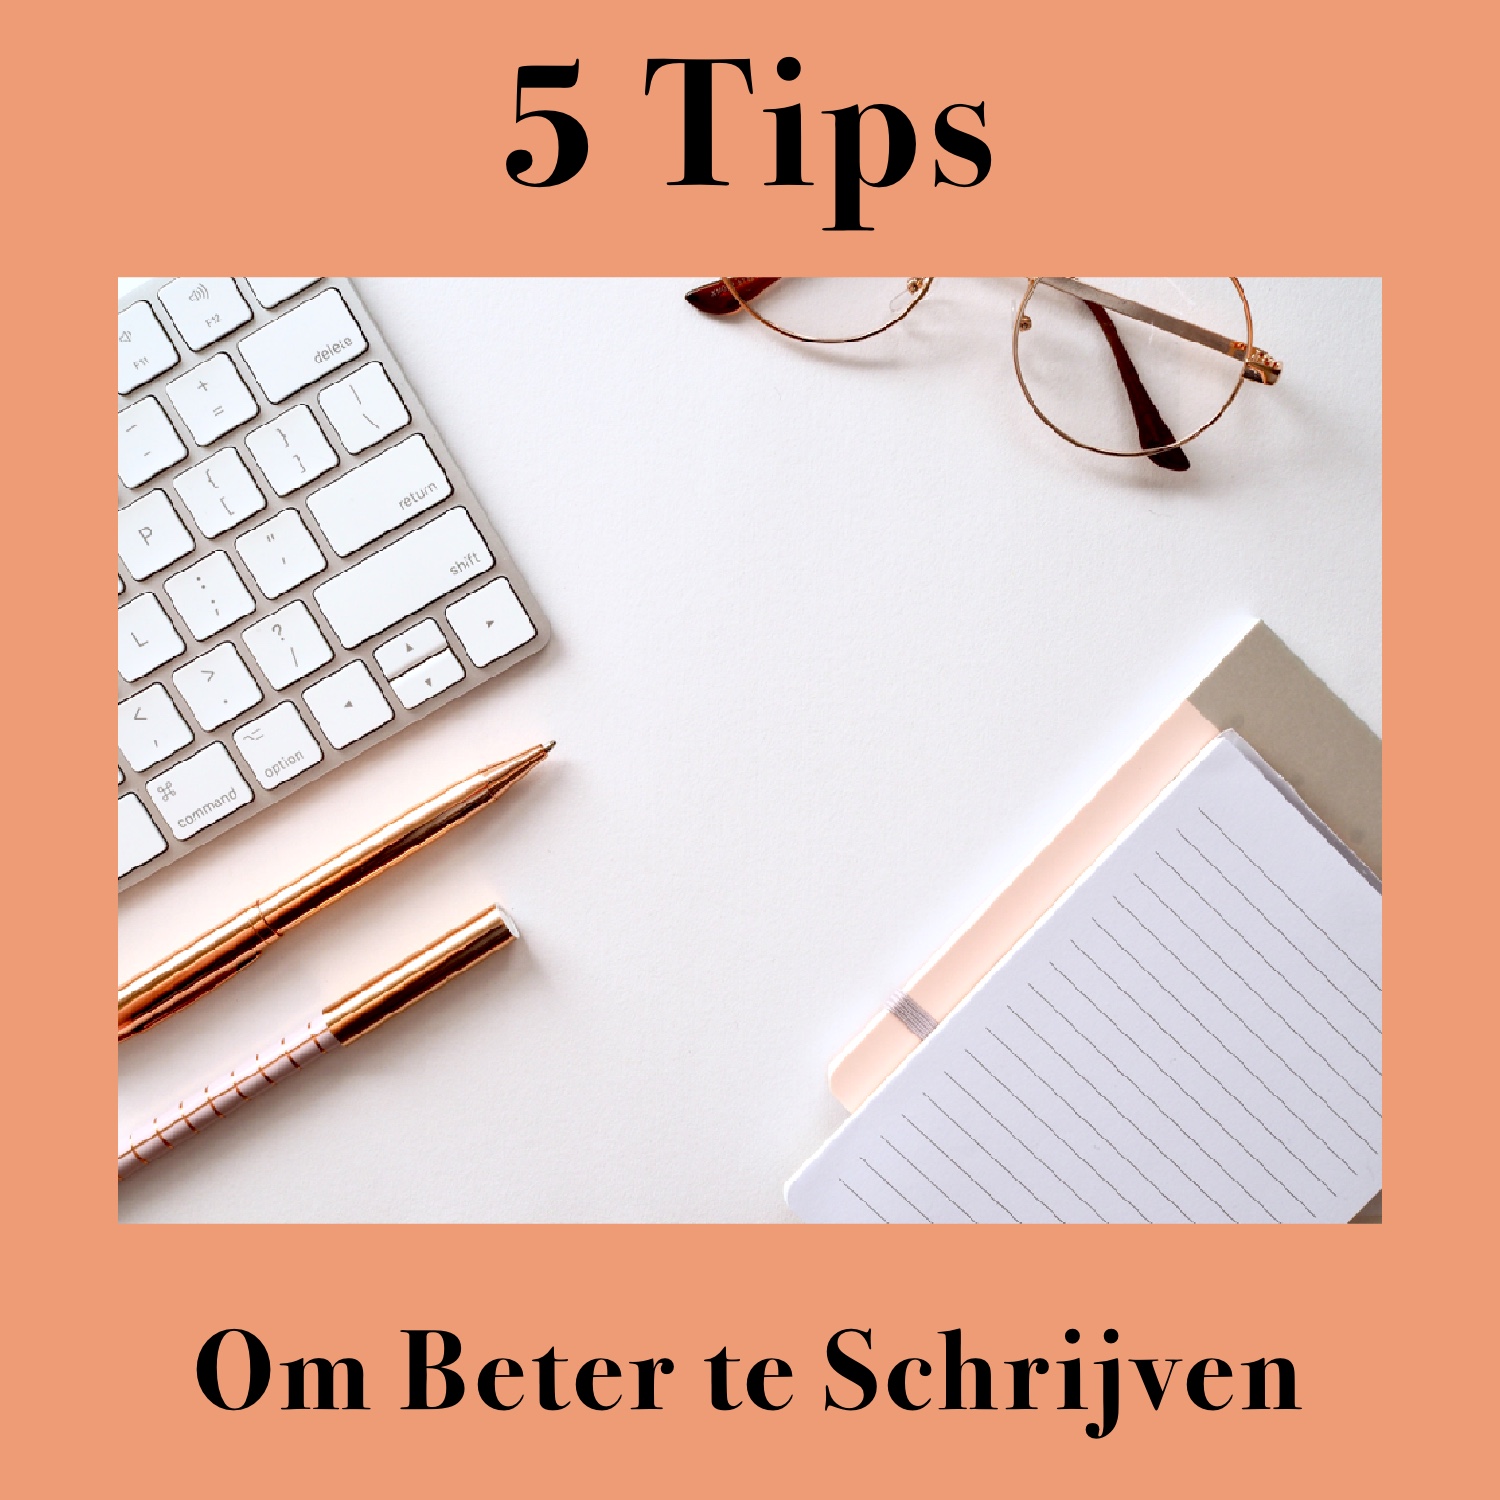 5 tips om beter te schrijven